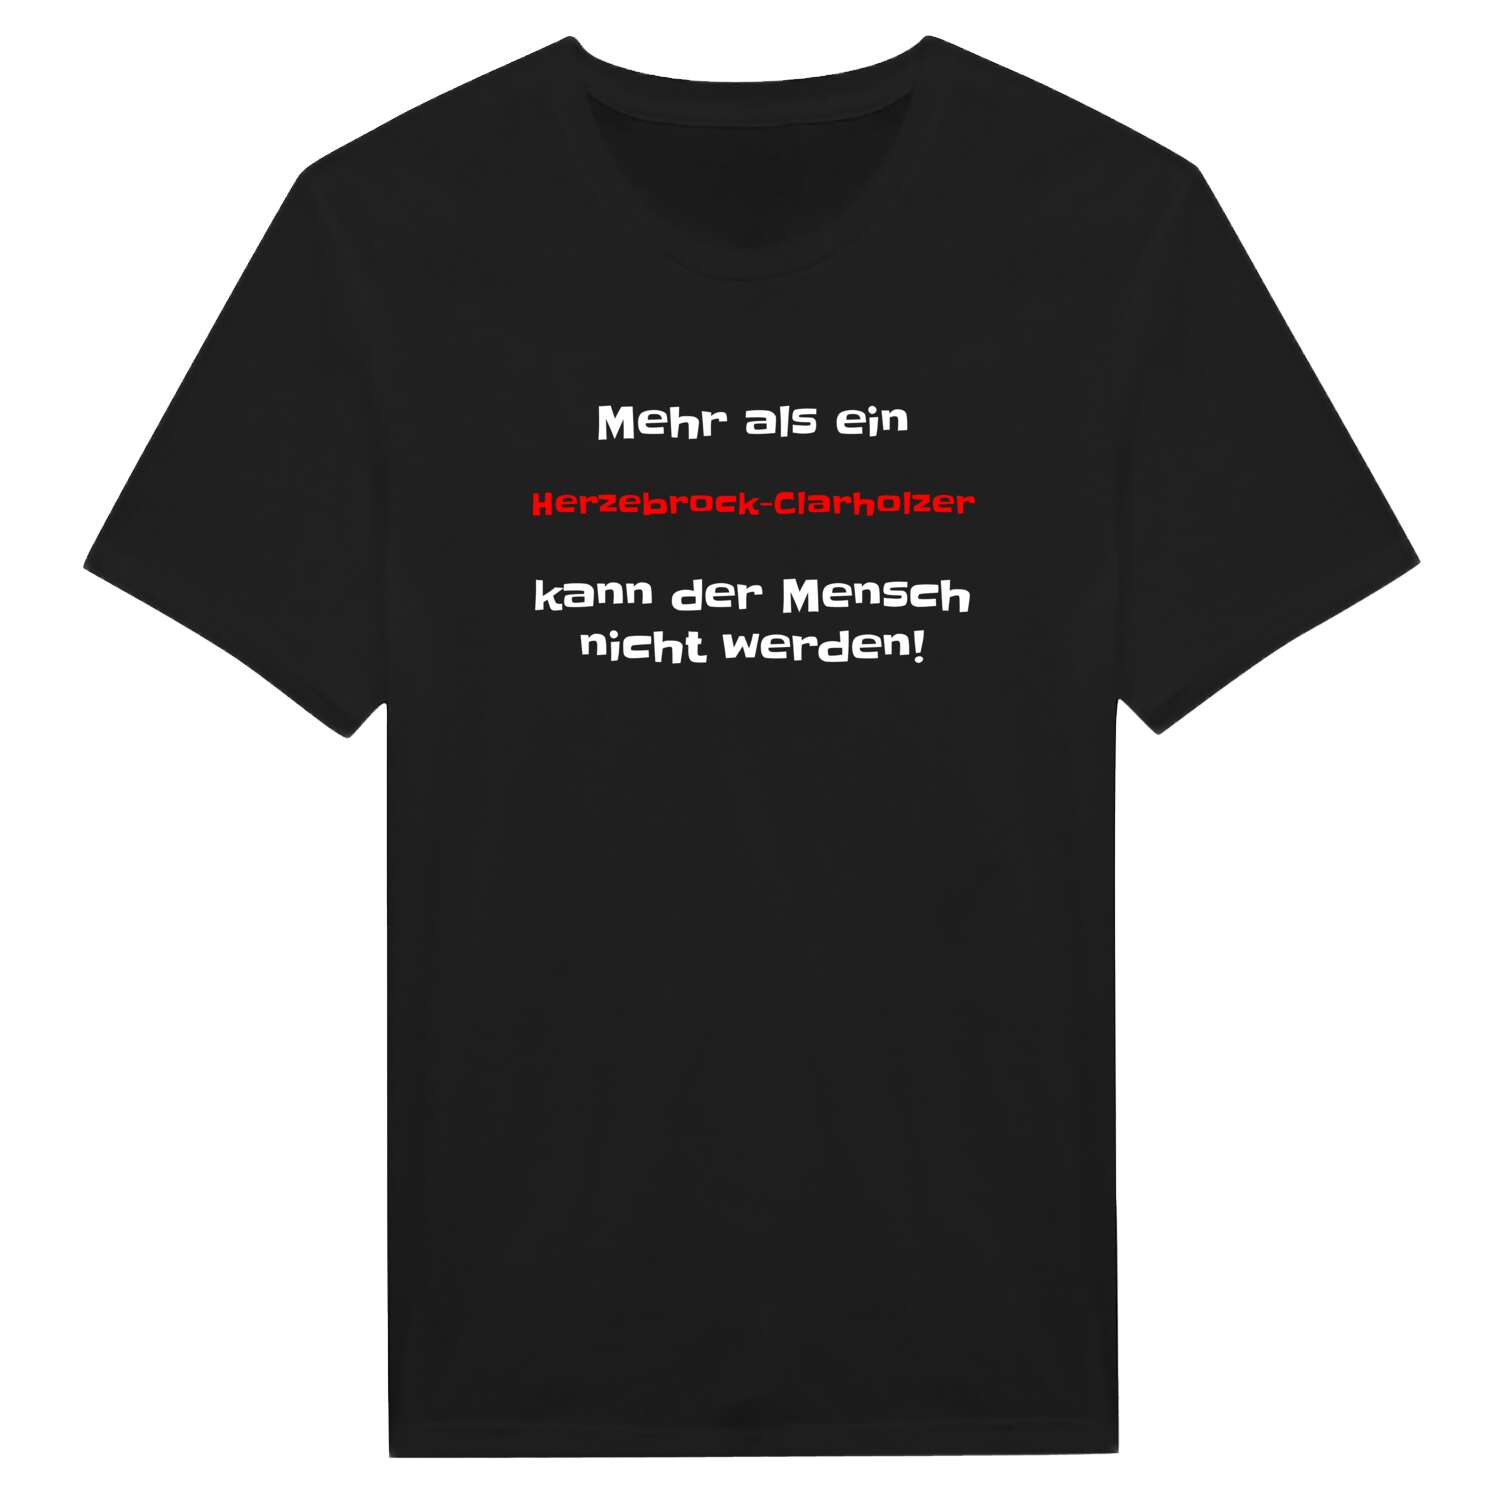 Herzebrock-Clarholz T-Shirt »Mehr als ein«